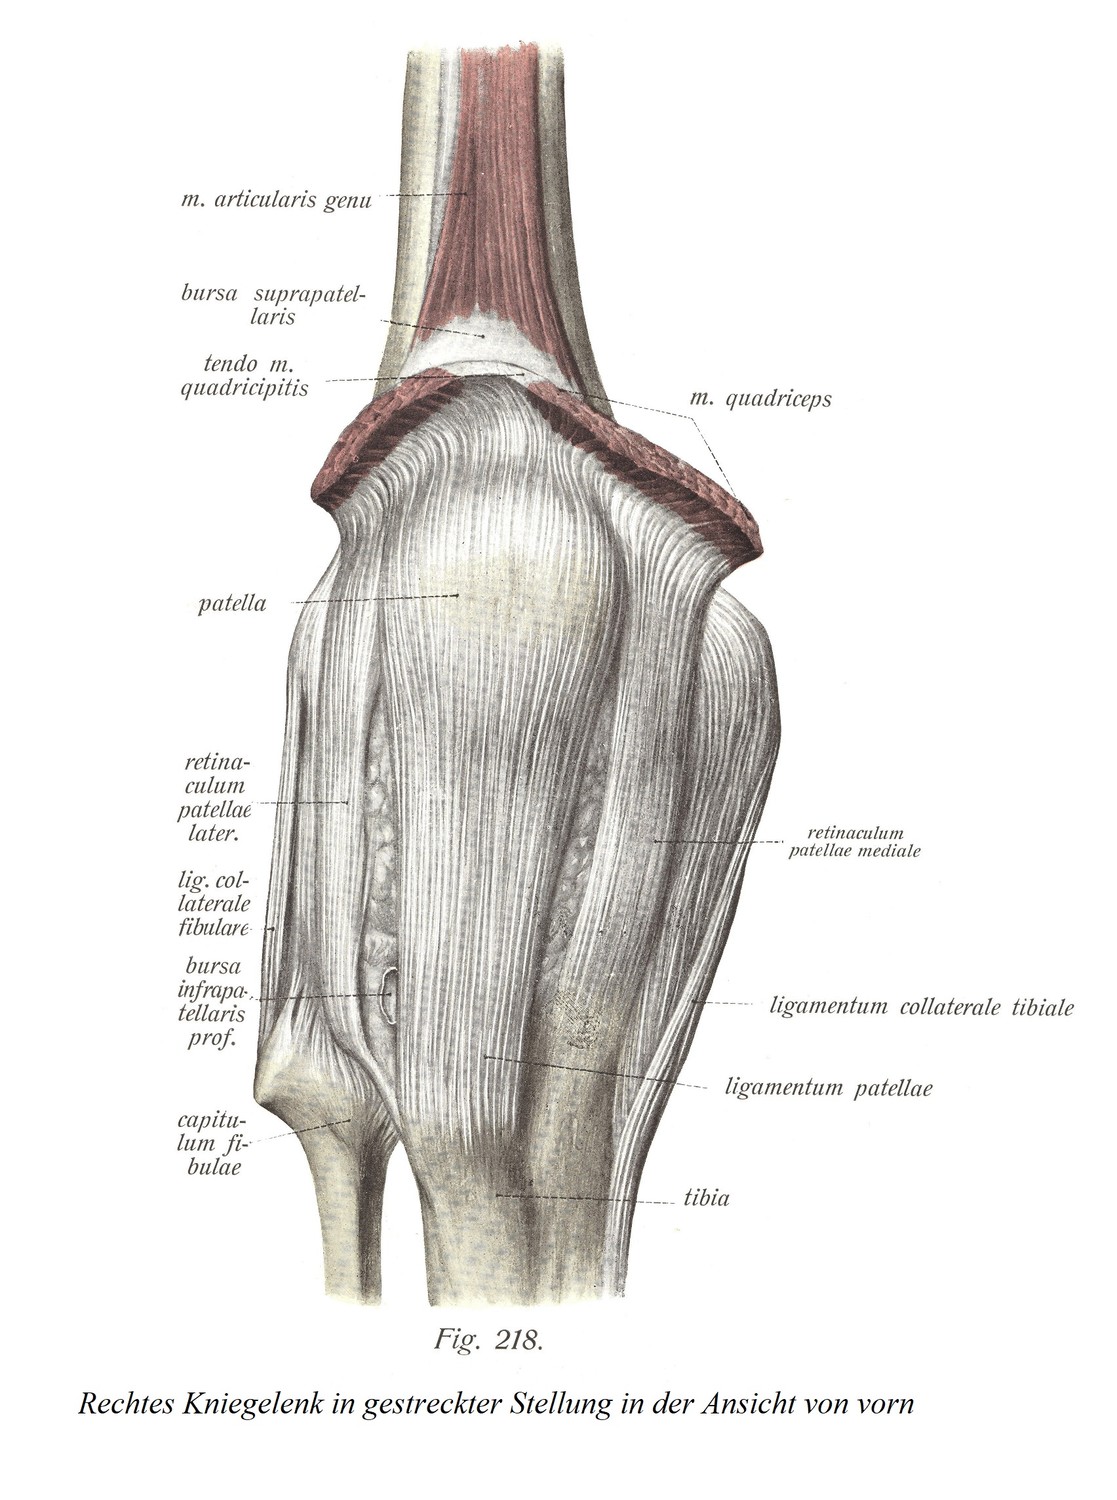 Правый коленный сустав в вытянутом положении спереди